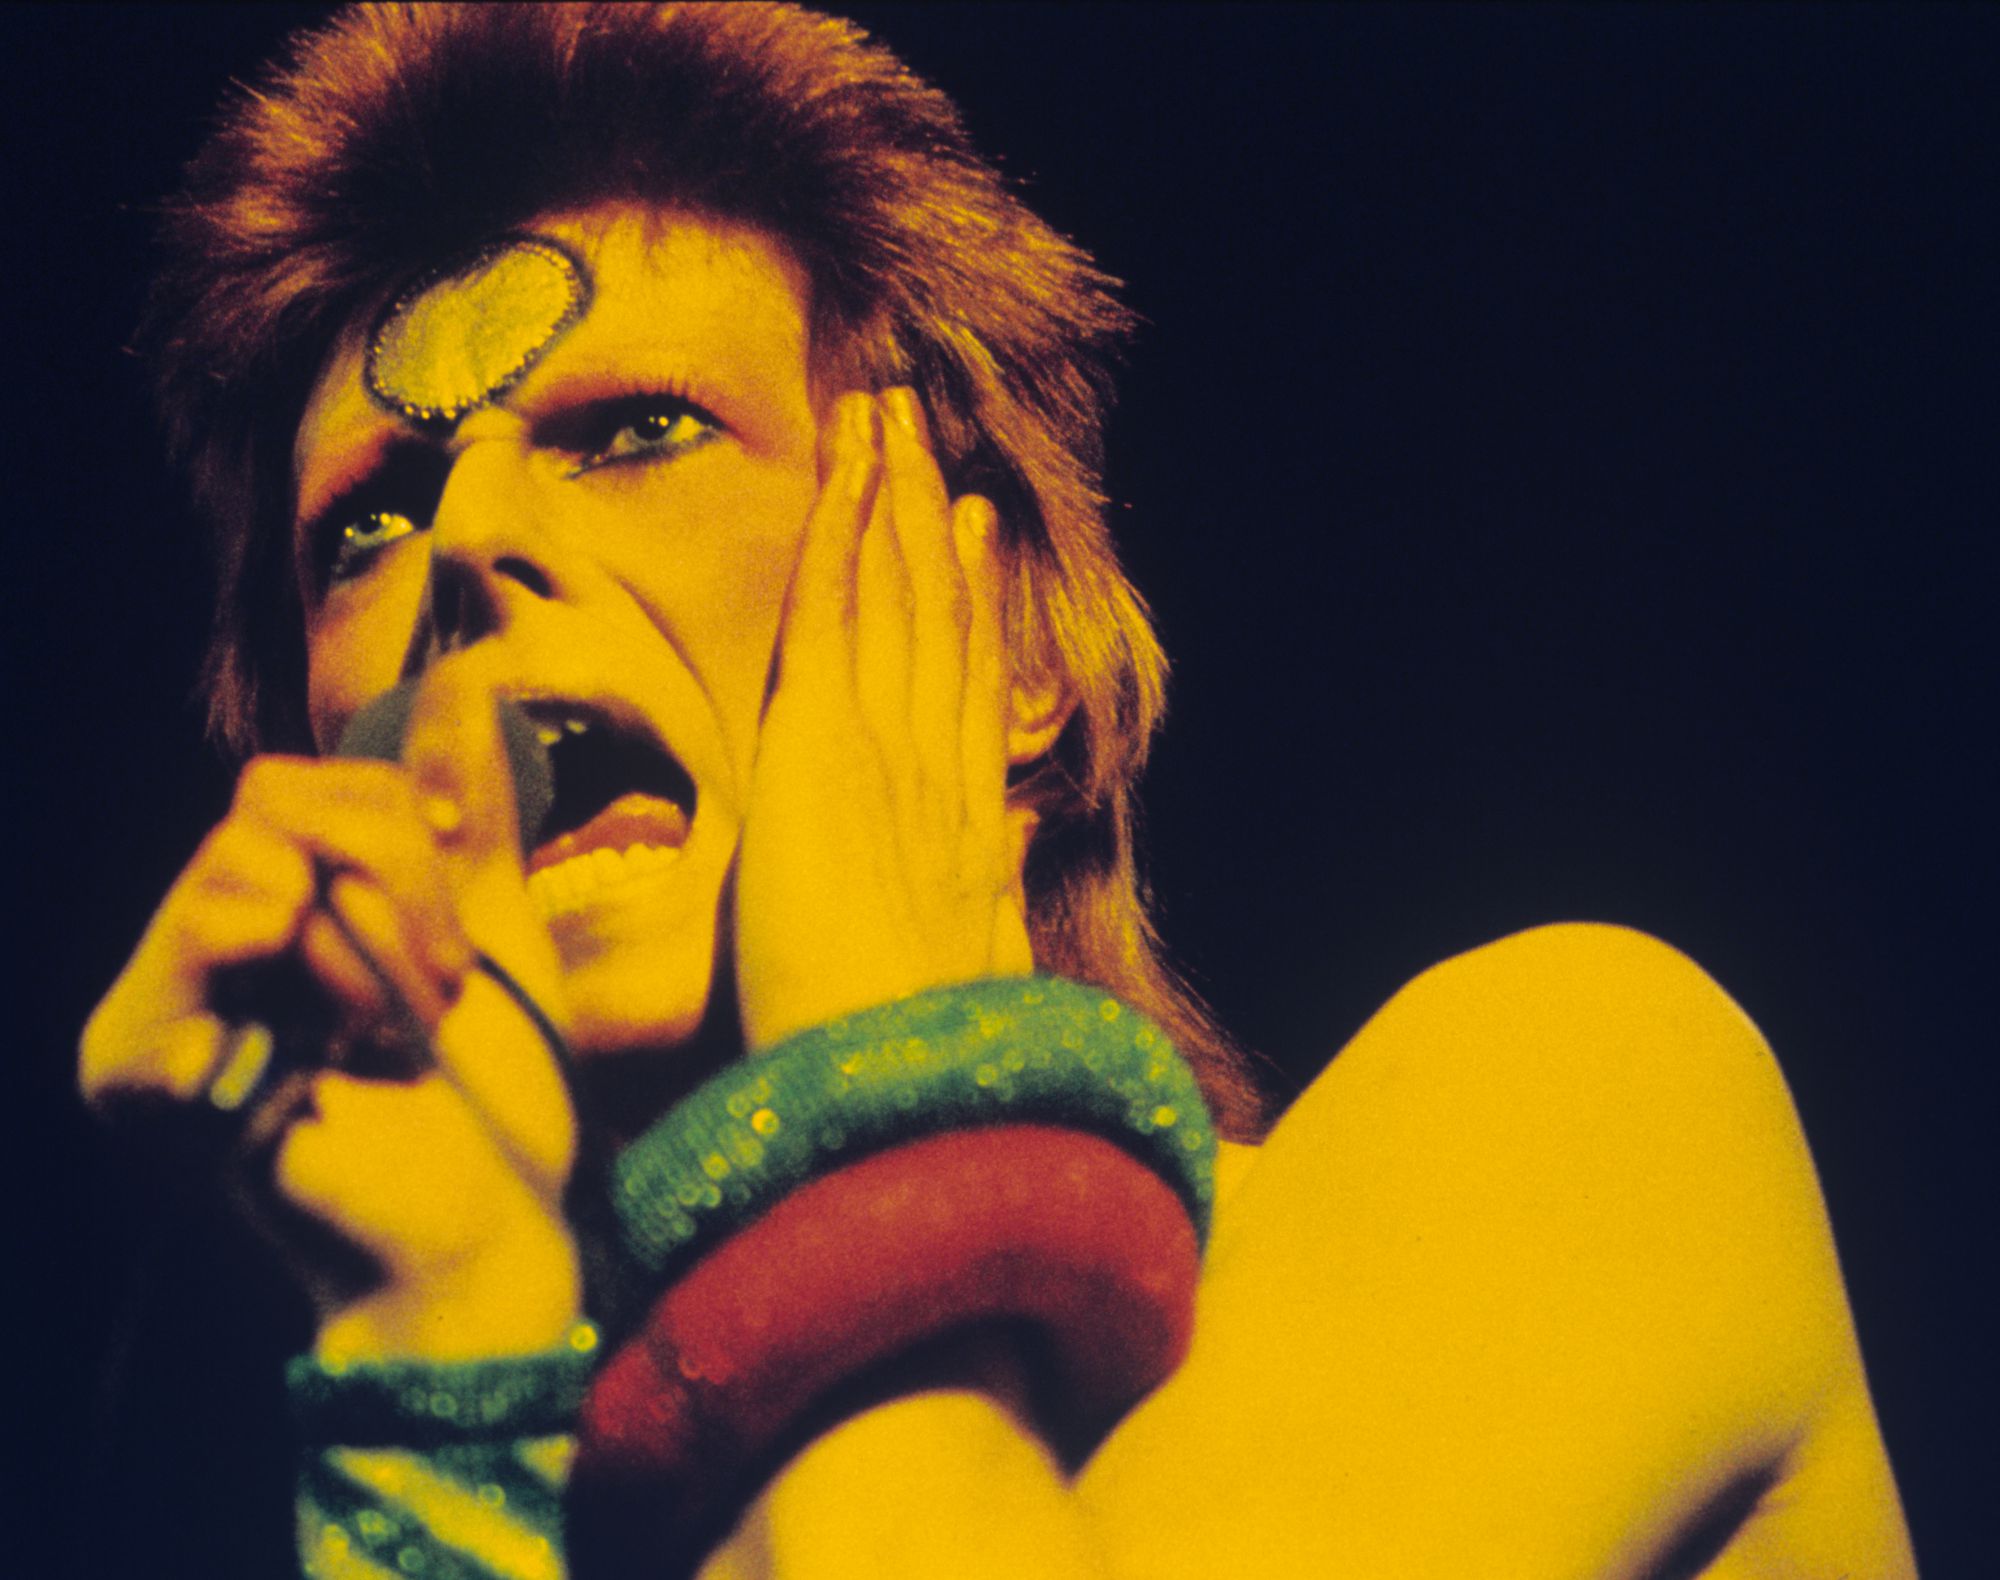 David Bowie en 1973 lors du Ziggy Stardust tour